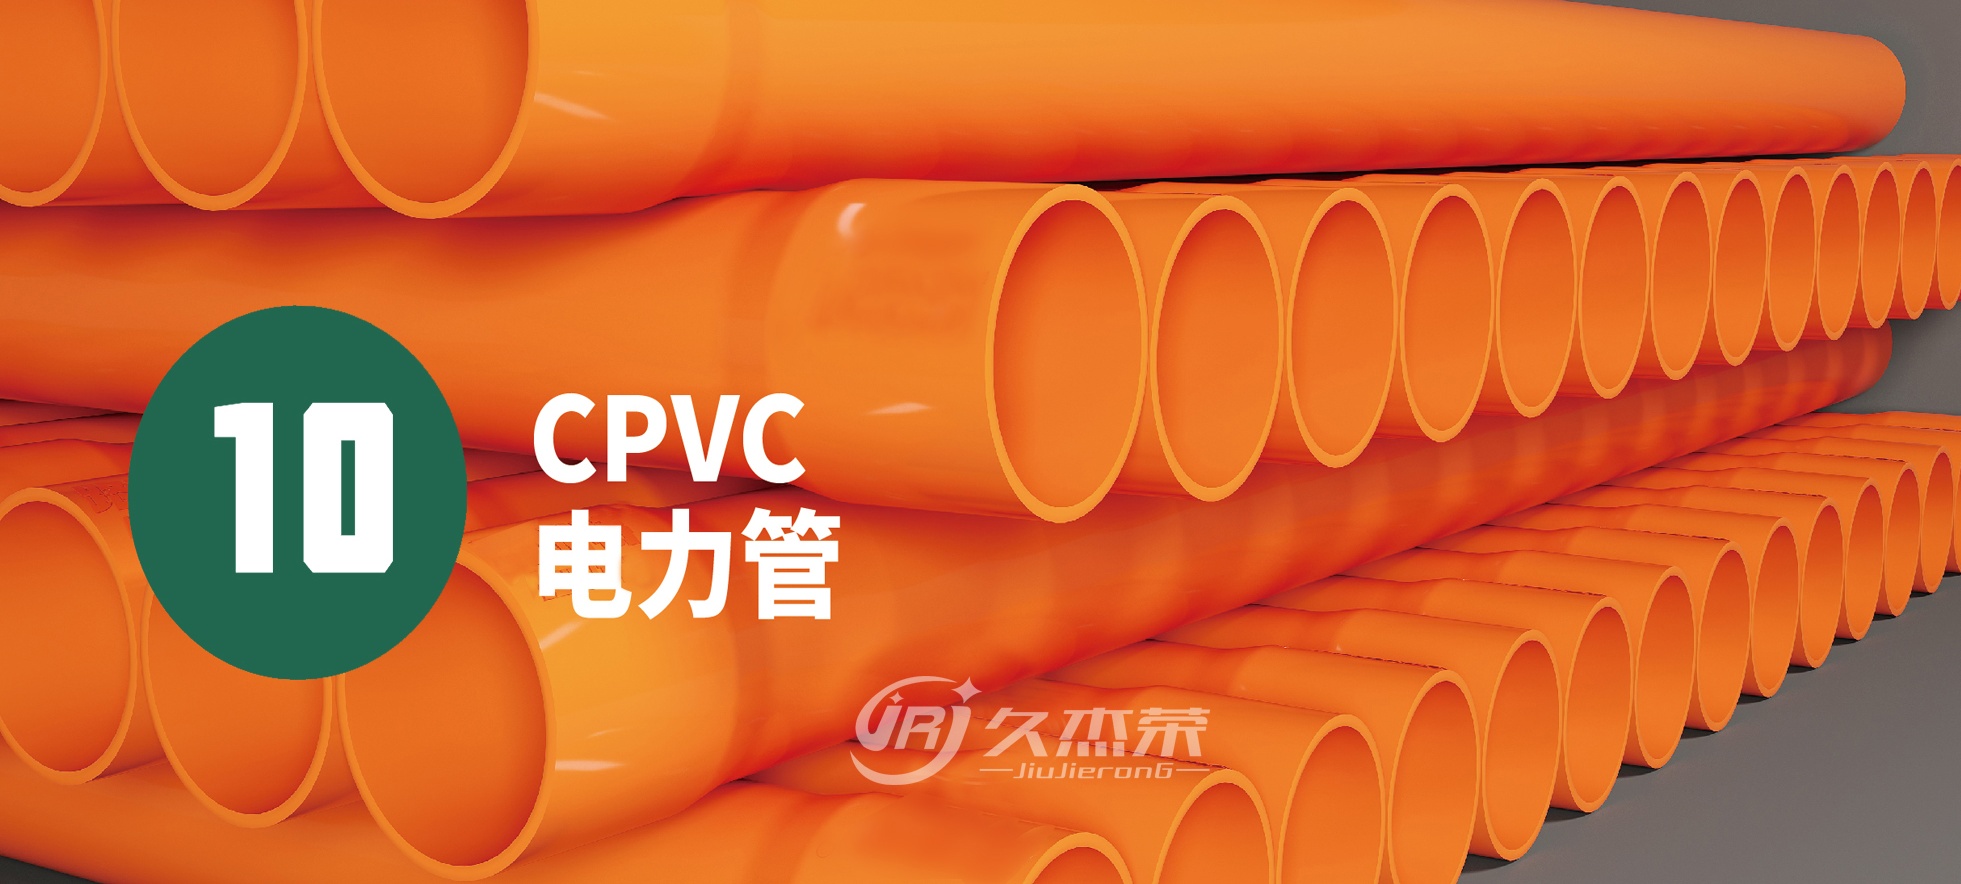 CPVC电力管